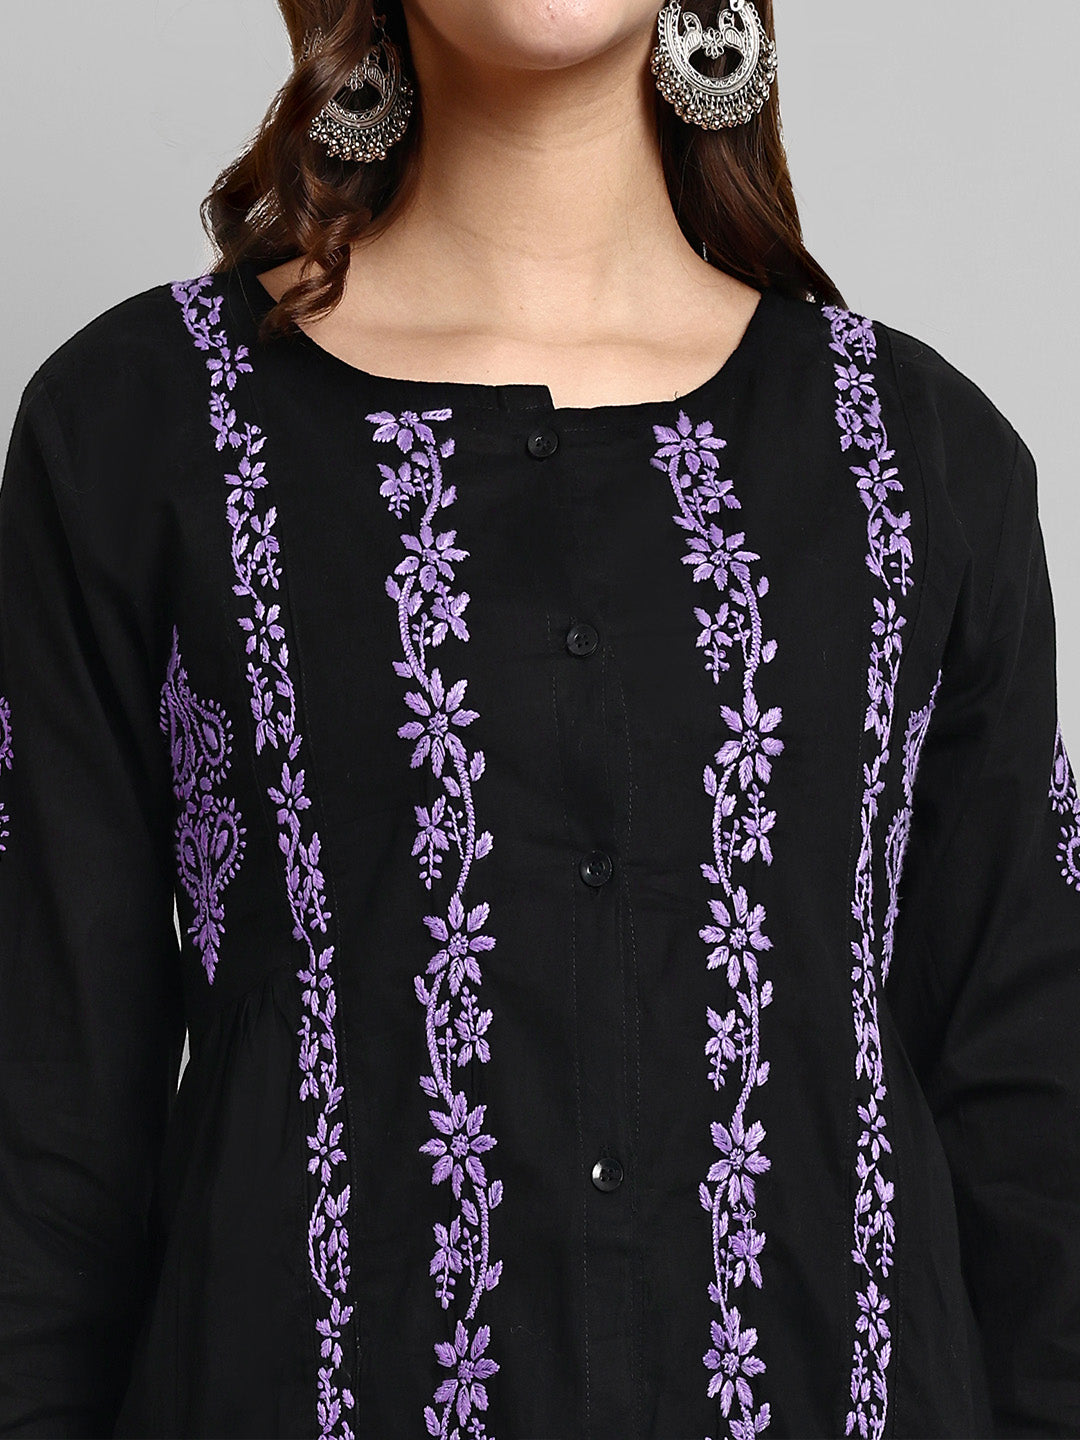 Black & Purple Cotton Machine Woven Chikankari Tunic Shirt